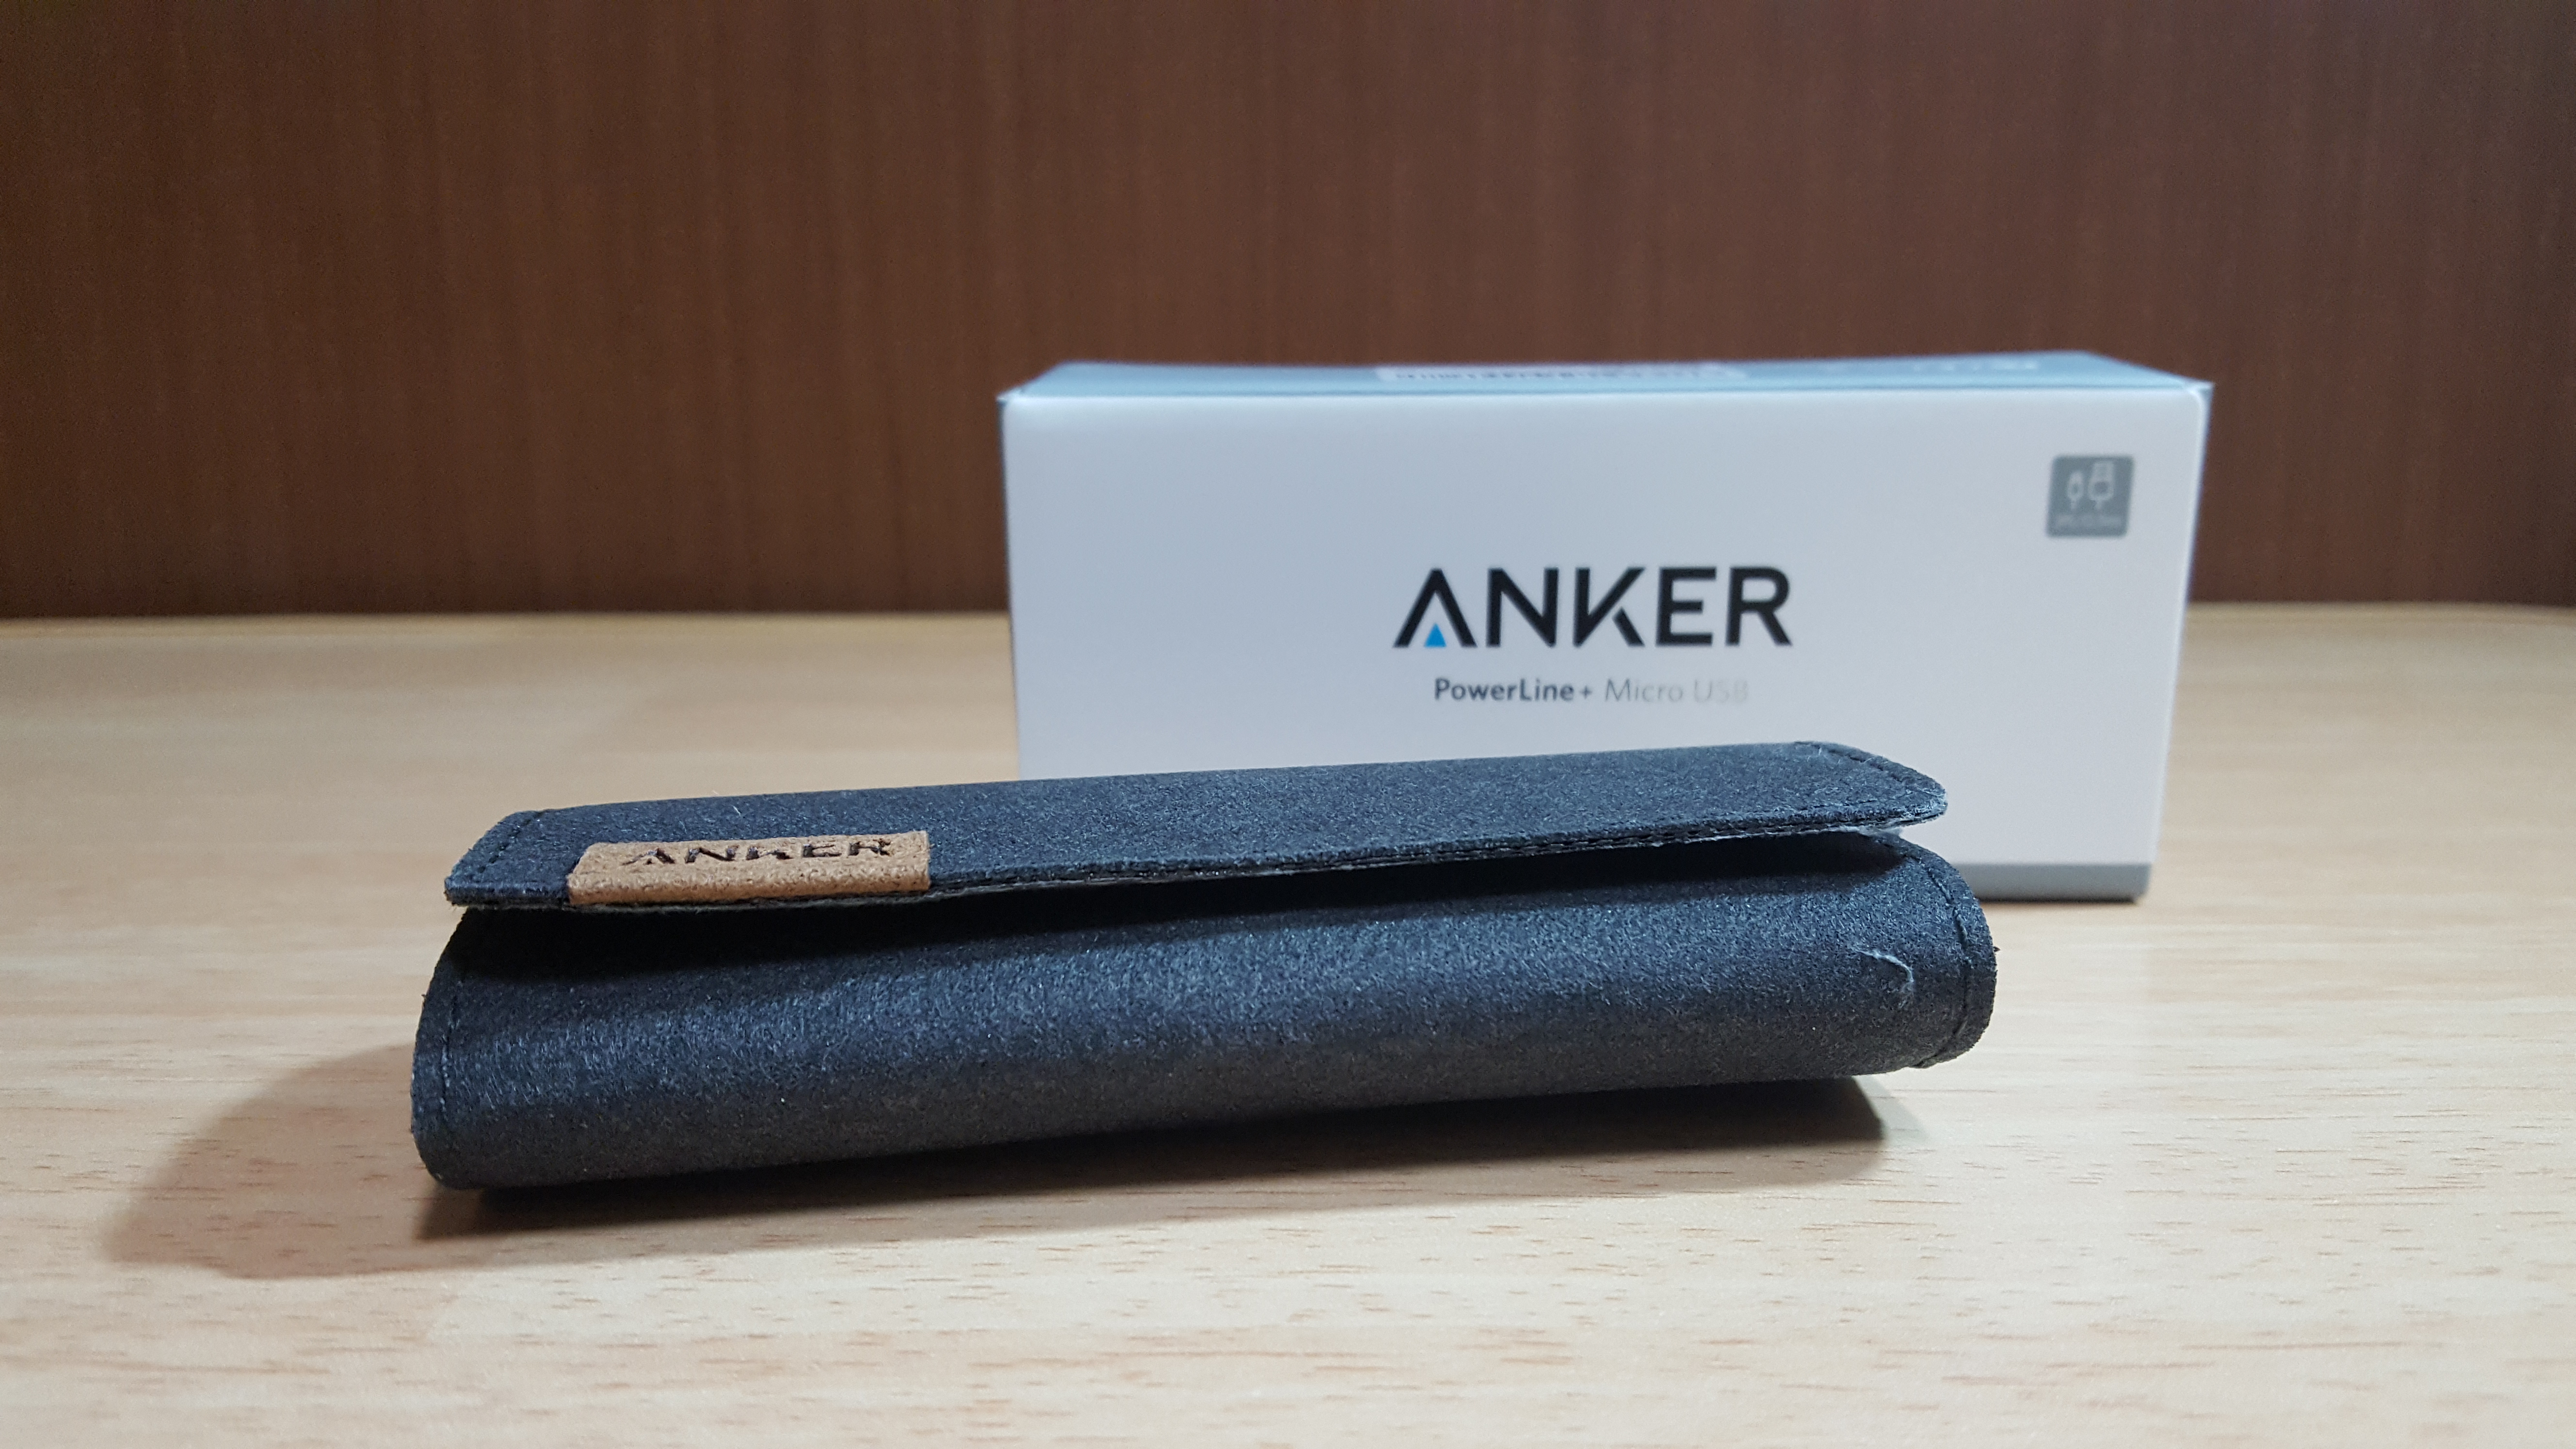 「Anker PowerLine+ Micro USBケーブル」レビュー。丈夫で断線を気にせず使えそうな逸品。